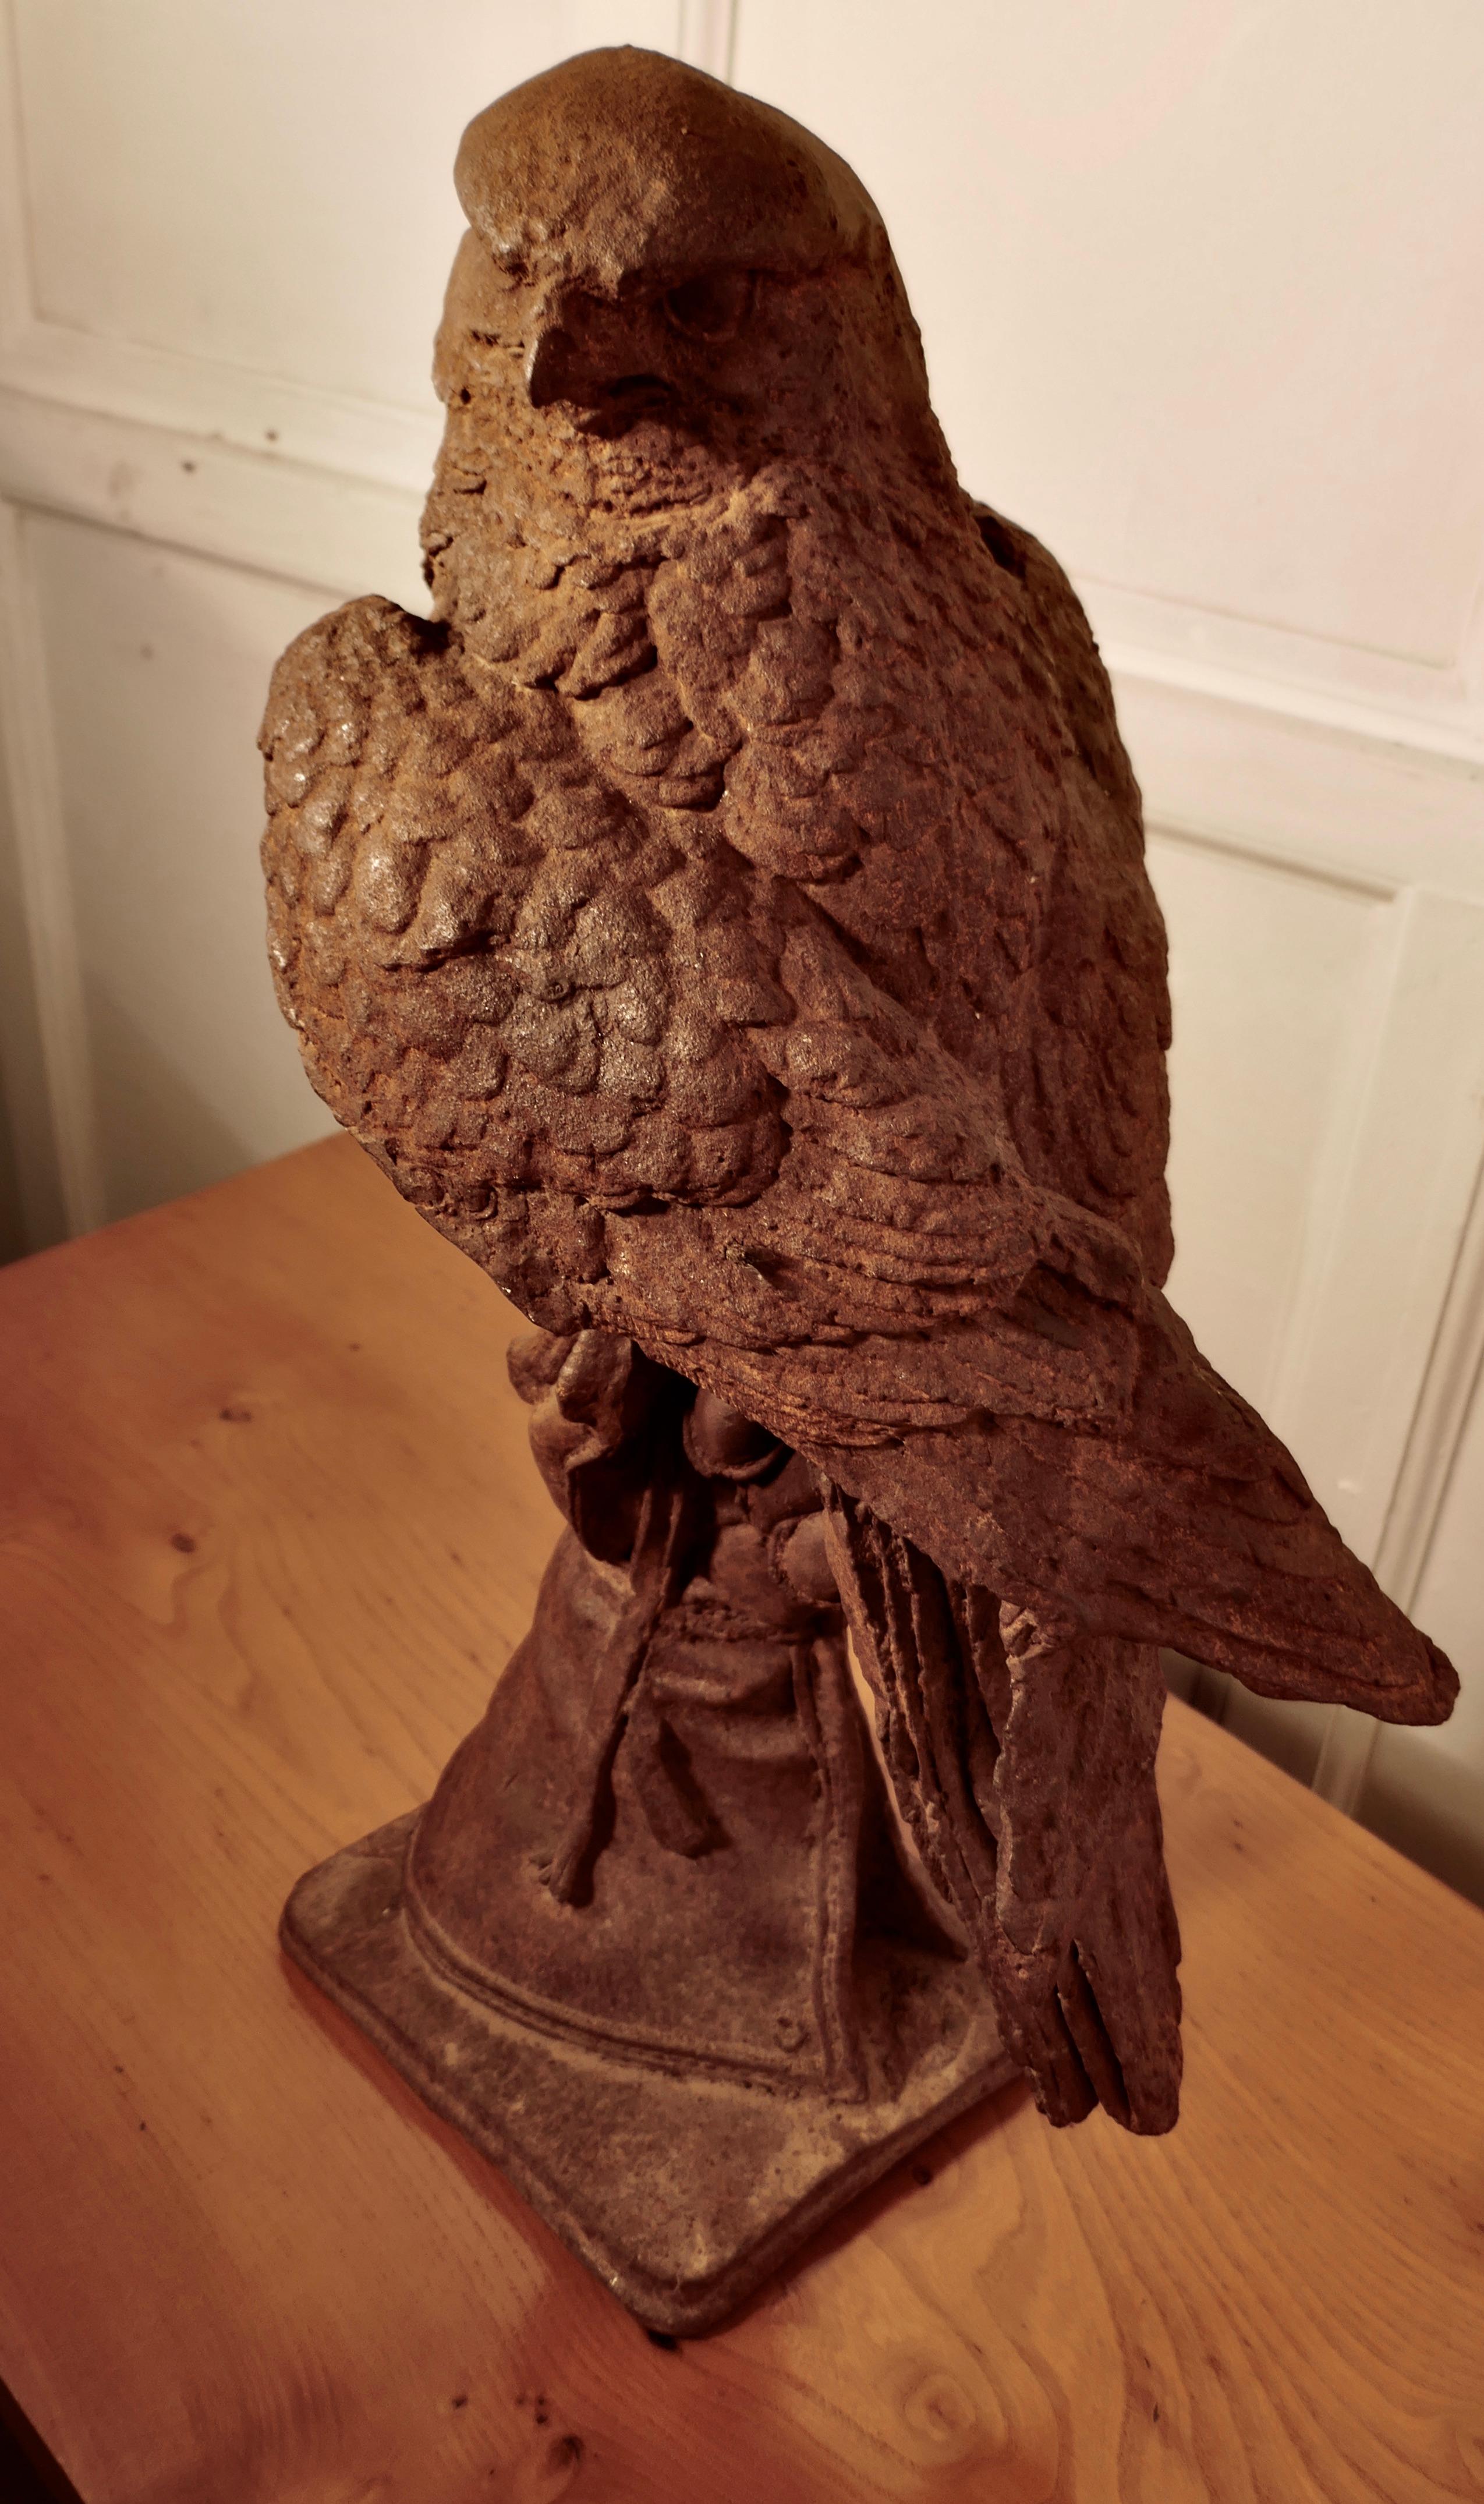 Große verwitterte Gusseisenstatue eines Falken auf einer behandschuhten Hand


Diese wunderbare Statue hat eine gute Patina gealtert es zeigt einen Falken auf eine behandschuhte Hand gehalten

Dieses Exemplar zeichnet sich durch einen äußerst